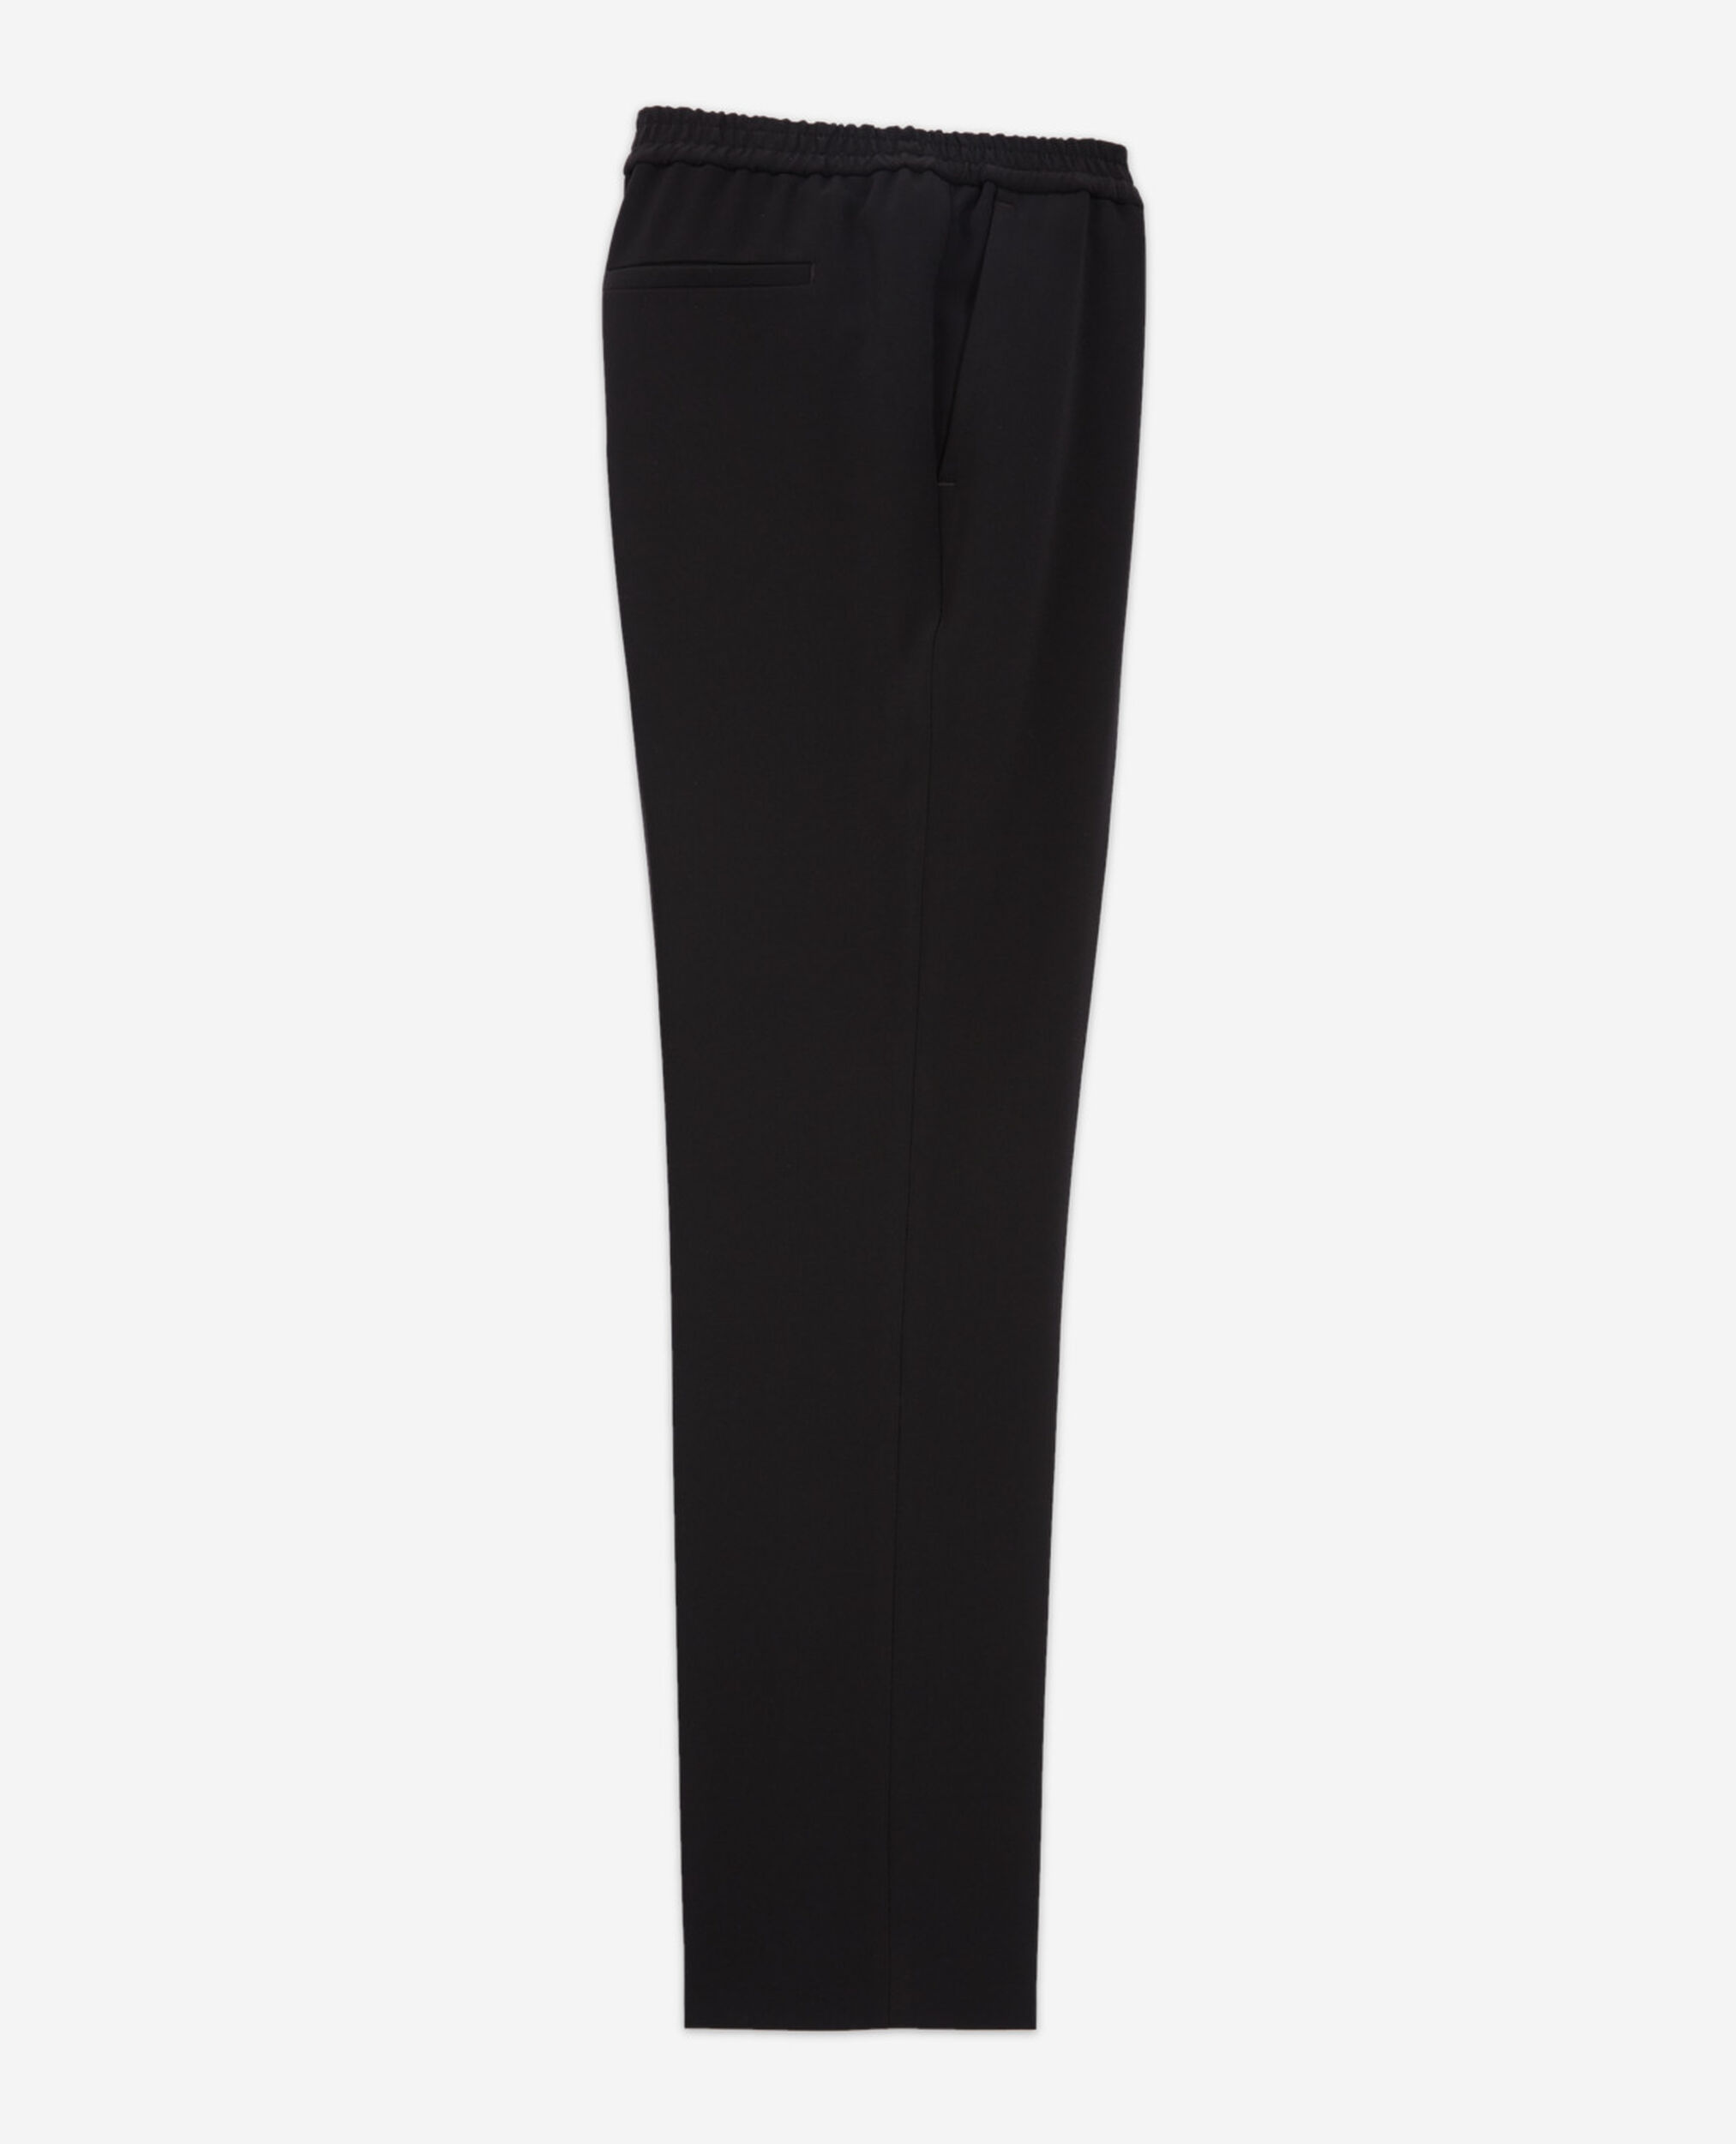 Pantalón negro tejido fluido cintura elástica, BLACK, hi-res image number null